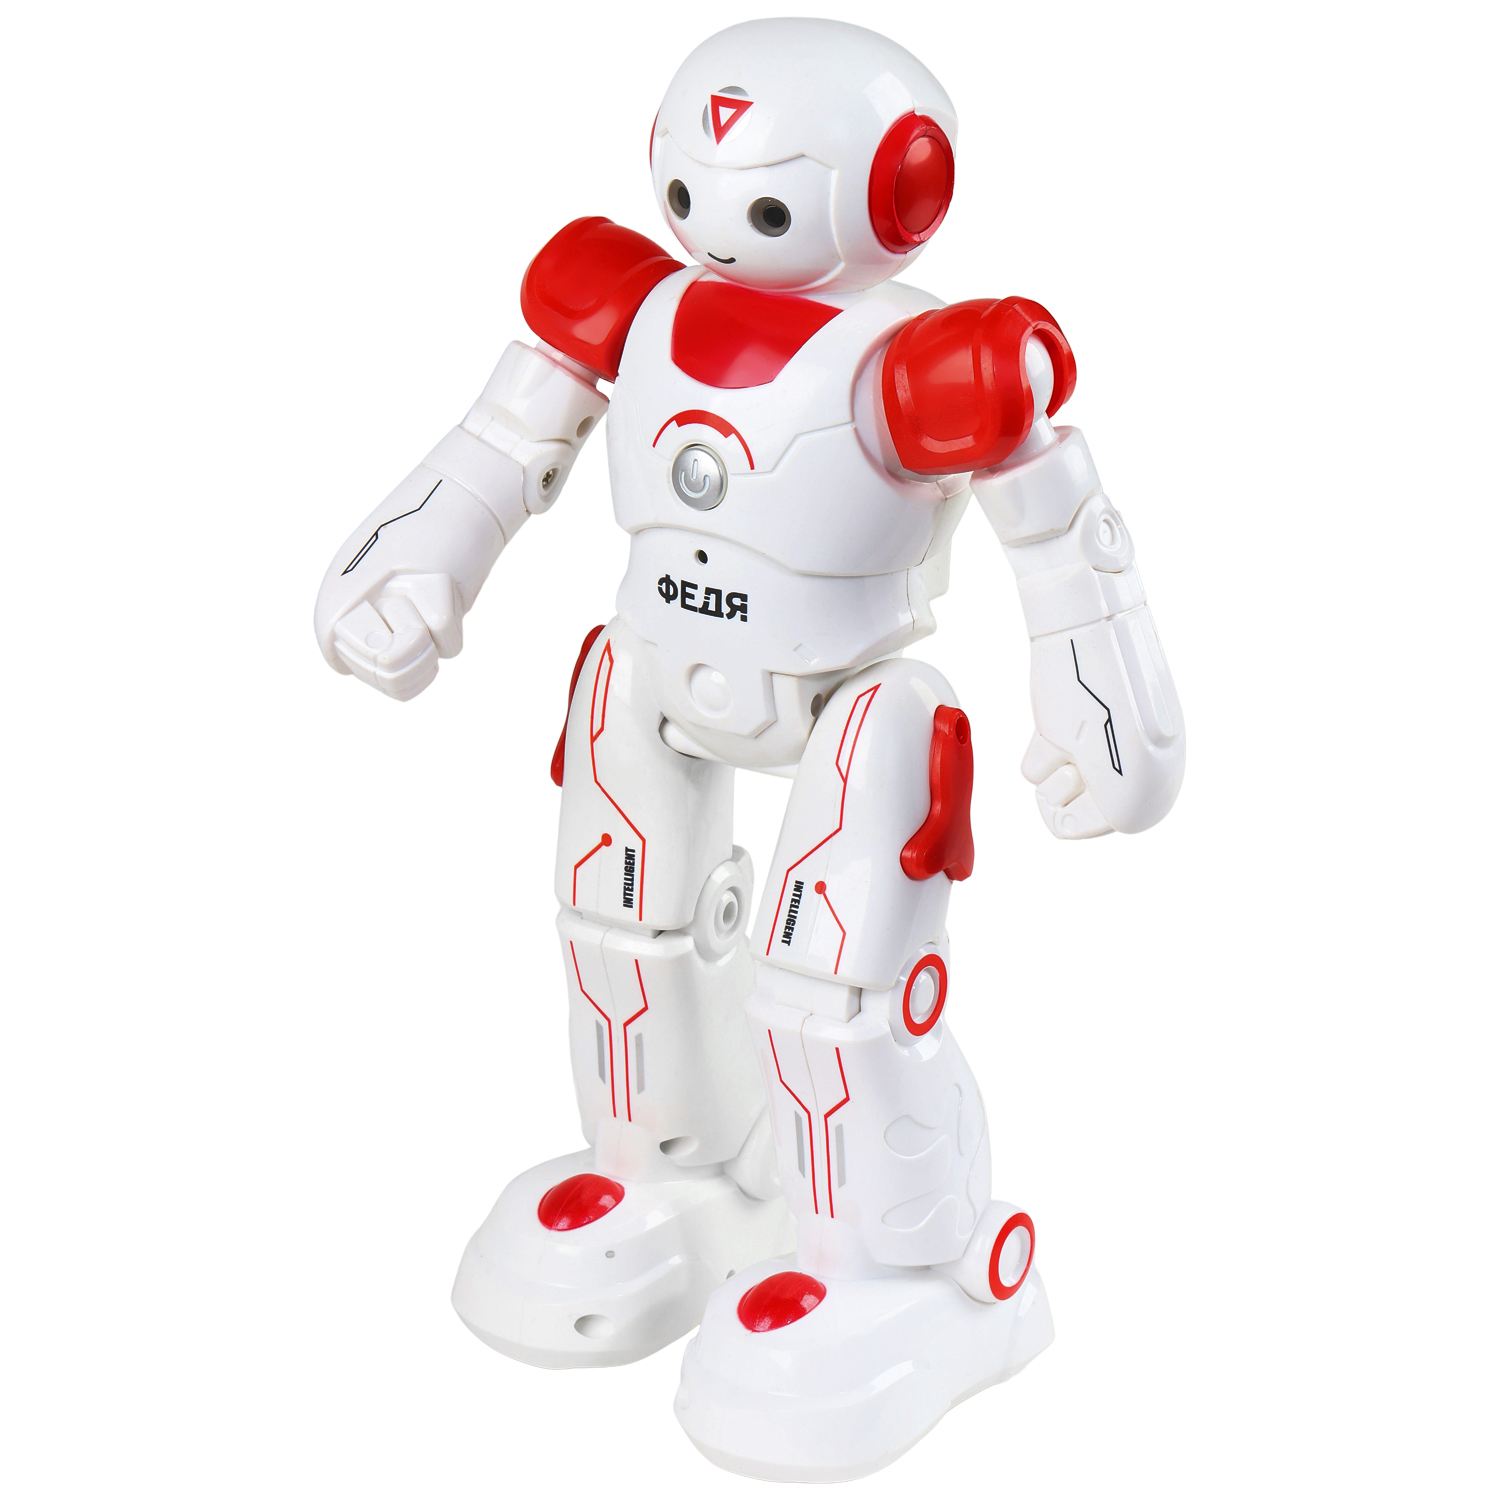 Робот РУ Федя Smart Baby красный движения (вперед, назад, влево, вправо), танцы, звуки, обуч 27см